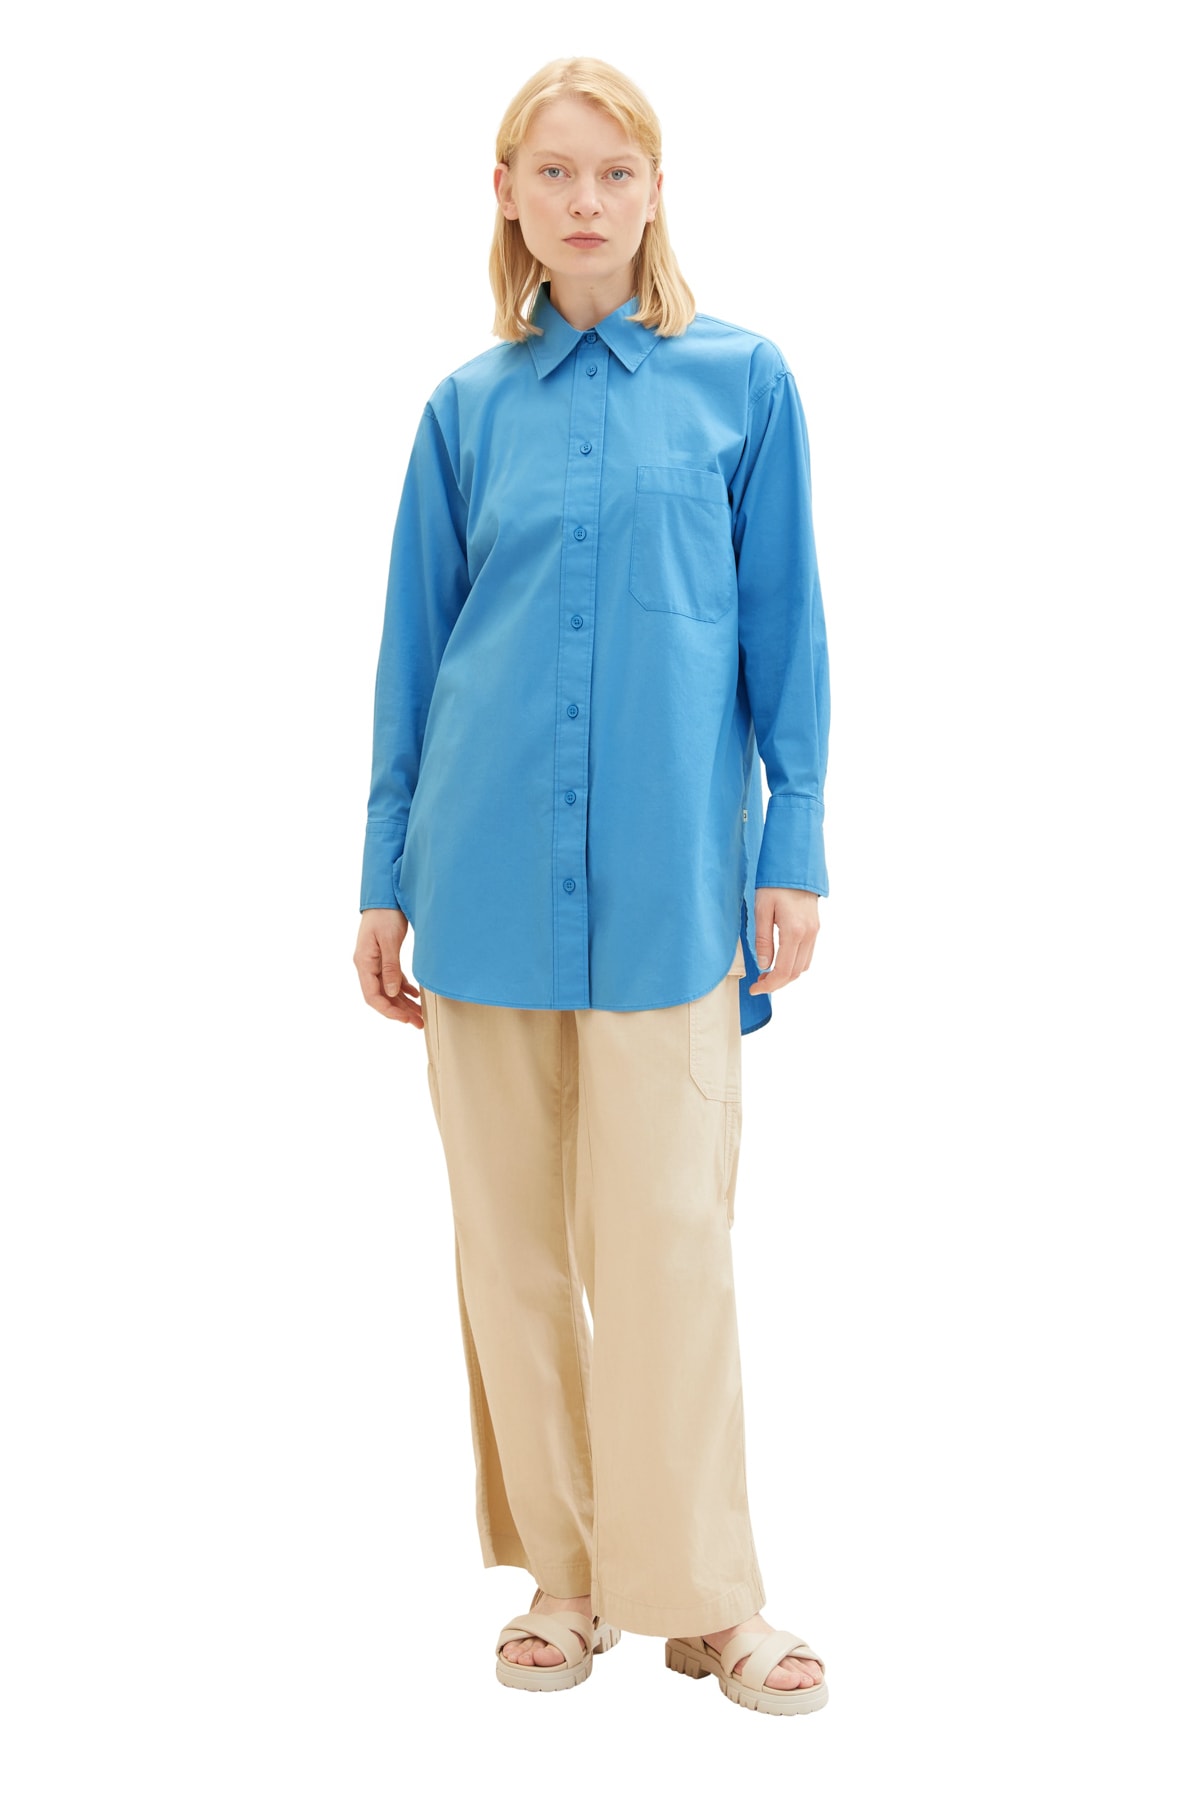 Рубашка Женская/Девочка водный спорт синяя Tom Tailor Denim, синий футболка tom tailor размер 140 синий